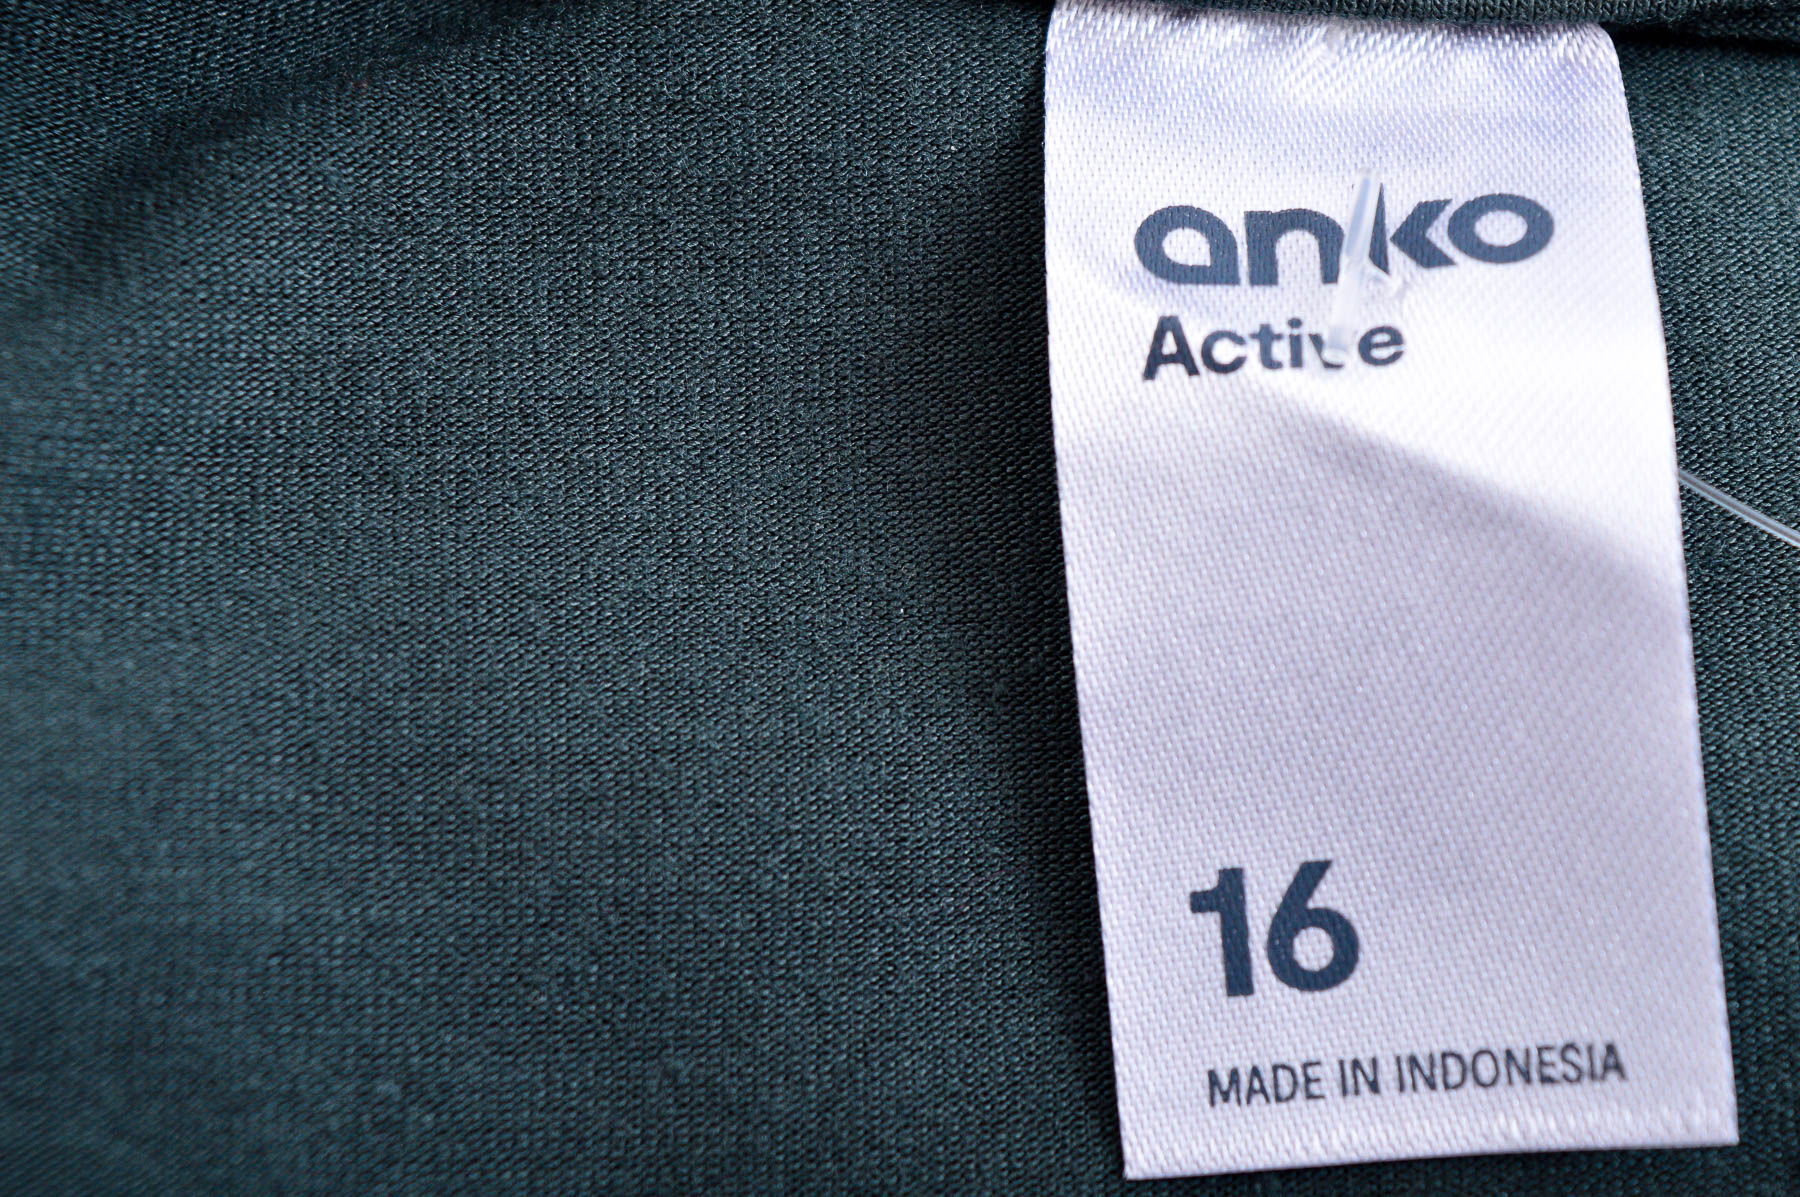 Γυνεκείο τοπ - Anko Active - 2